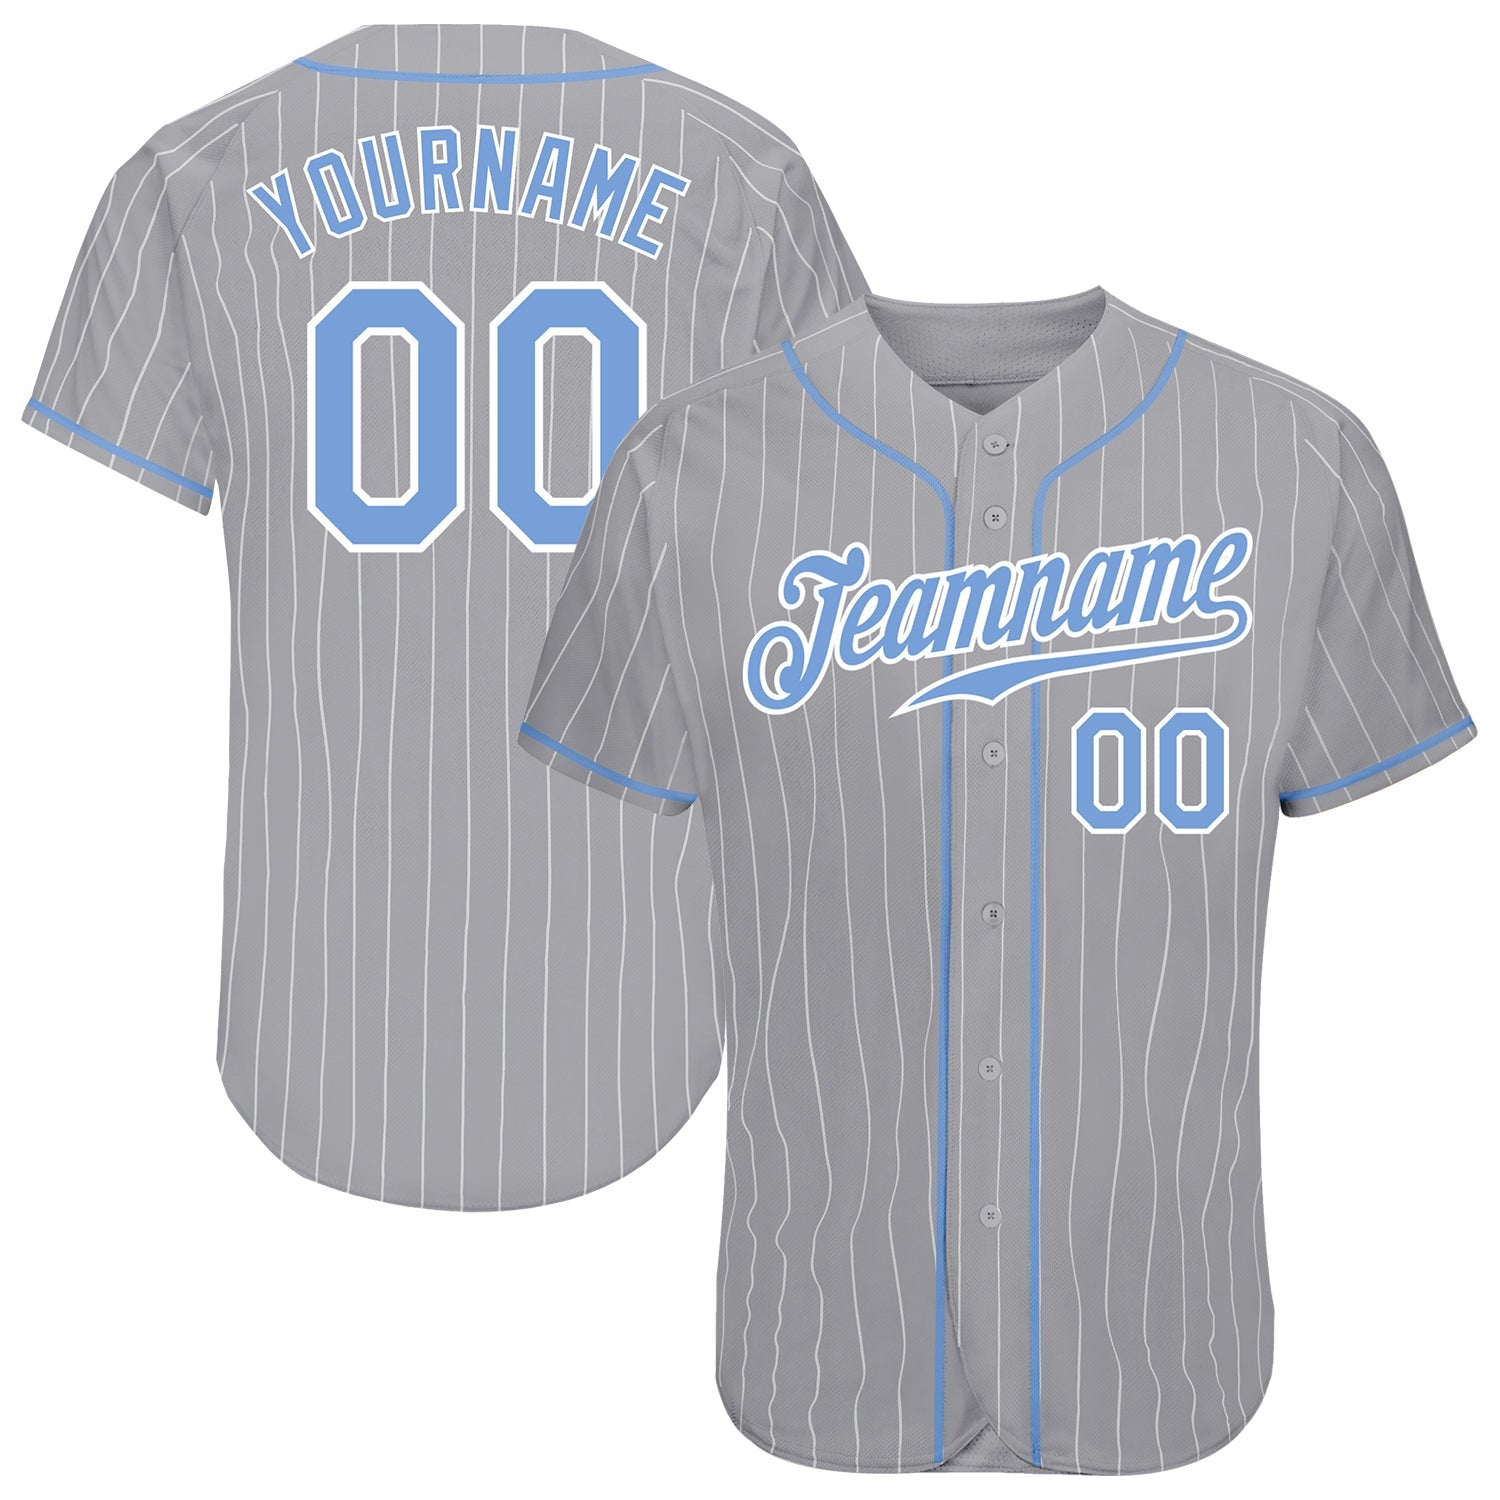 Personnalisé gris blanc à fines rayures bleu clair-blanc authentique maillots de baseball